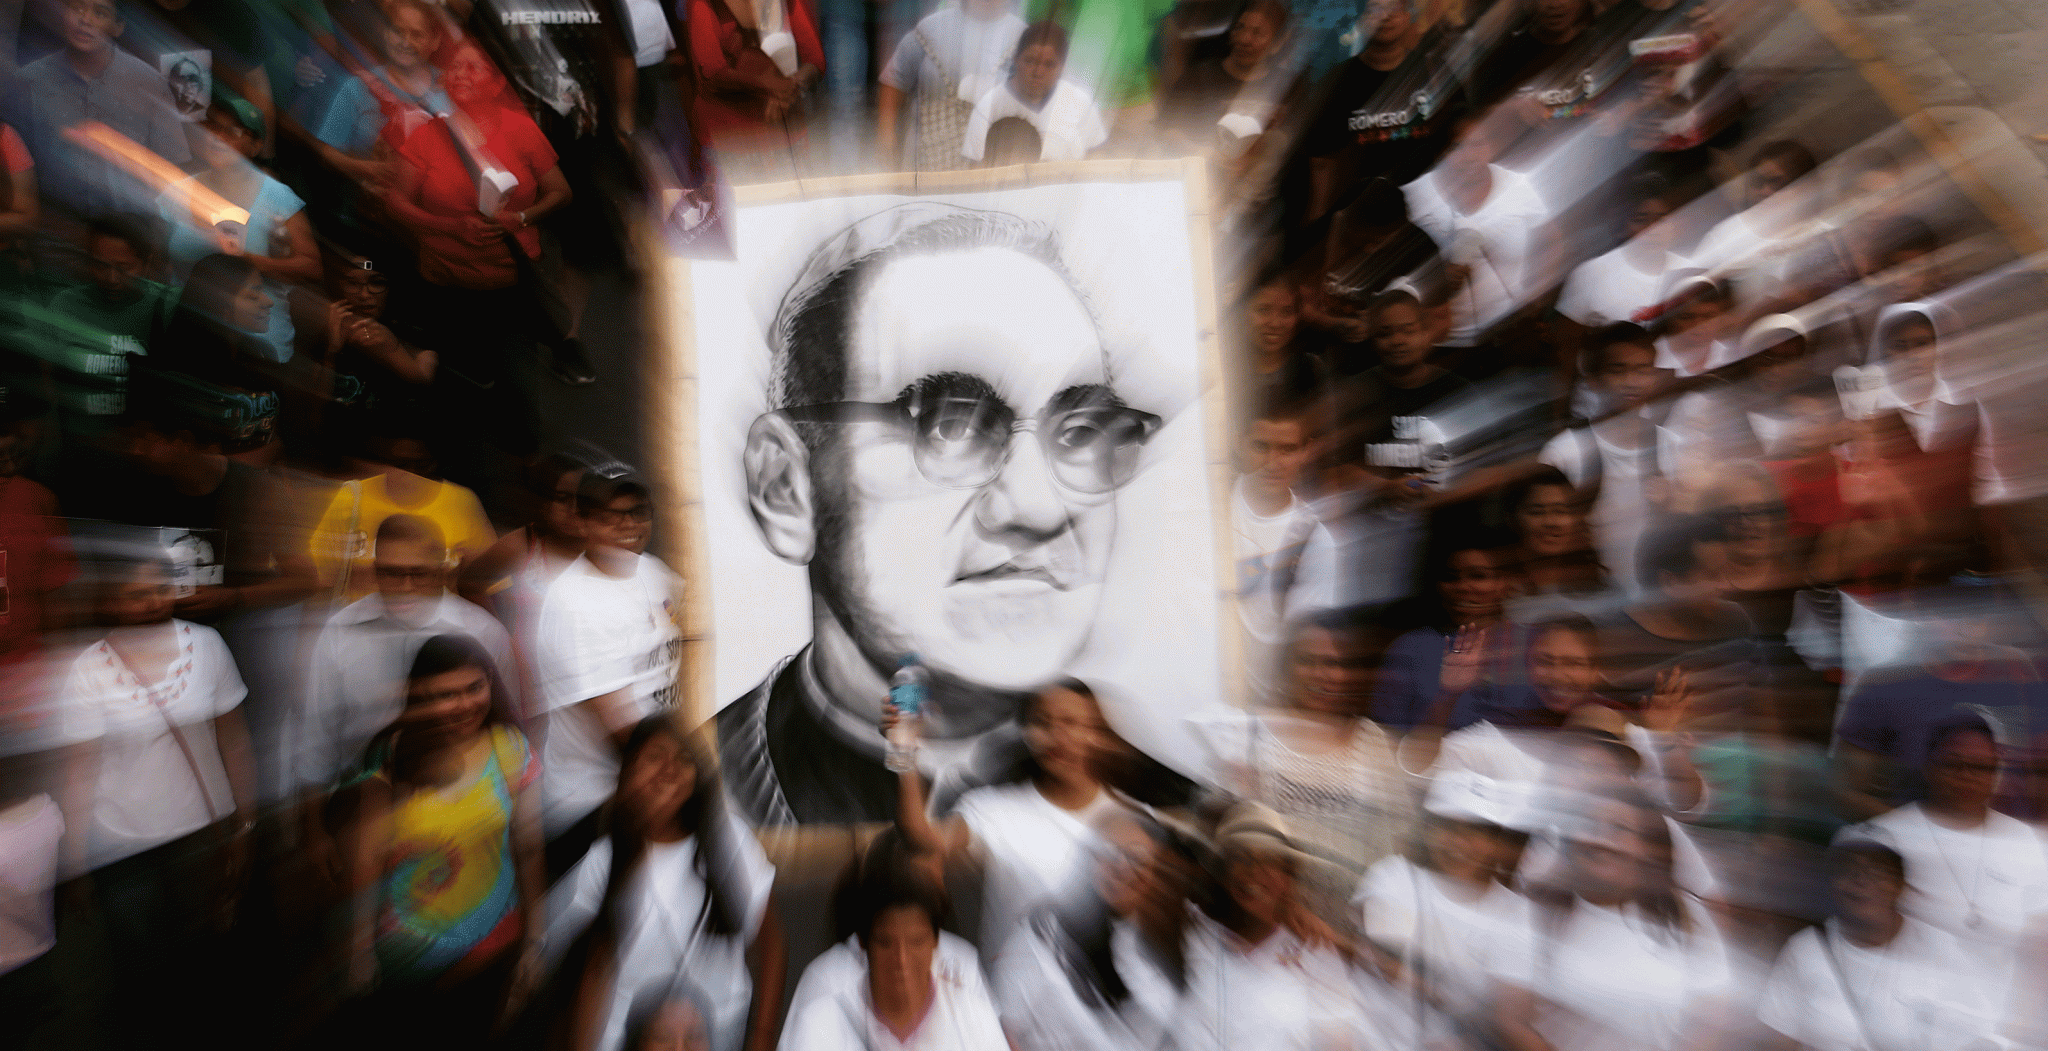 Apoyo a la casusa de monseñor Óscar Romero